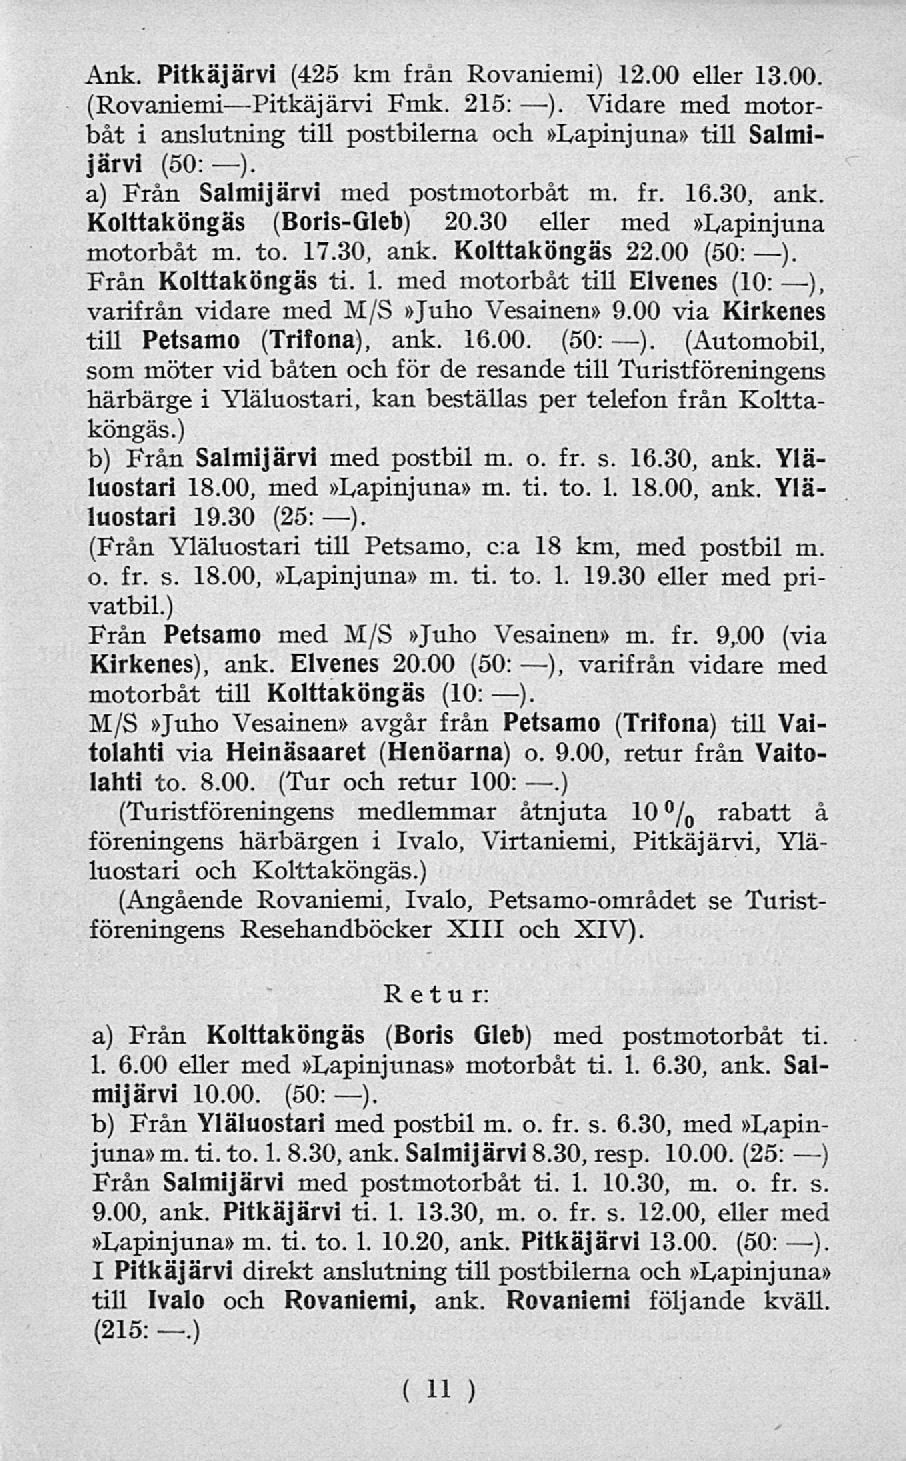 Ank. Pitkäjärvi (425 km från Rovaniemi) 12.00 eller 13.00. (Rovaniemi Pitkäjärvi Fmk. 215: ). Vidare med motorbåt i anslutning till postbilerna och»lapinjuna» till Salmijärvi (50: ).